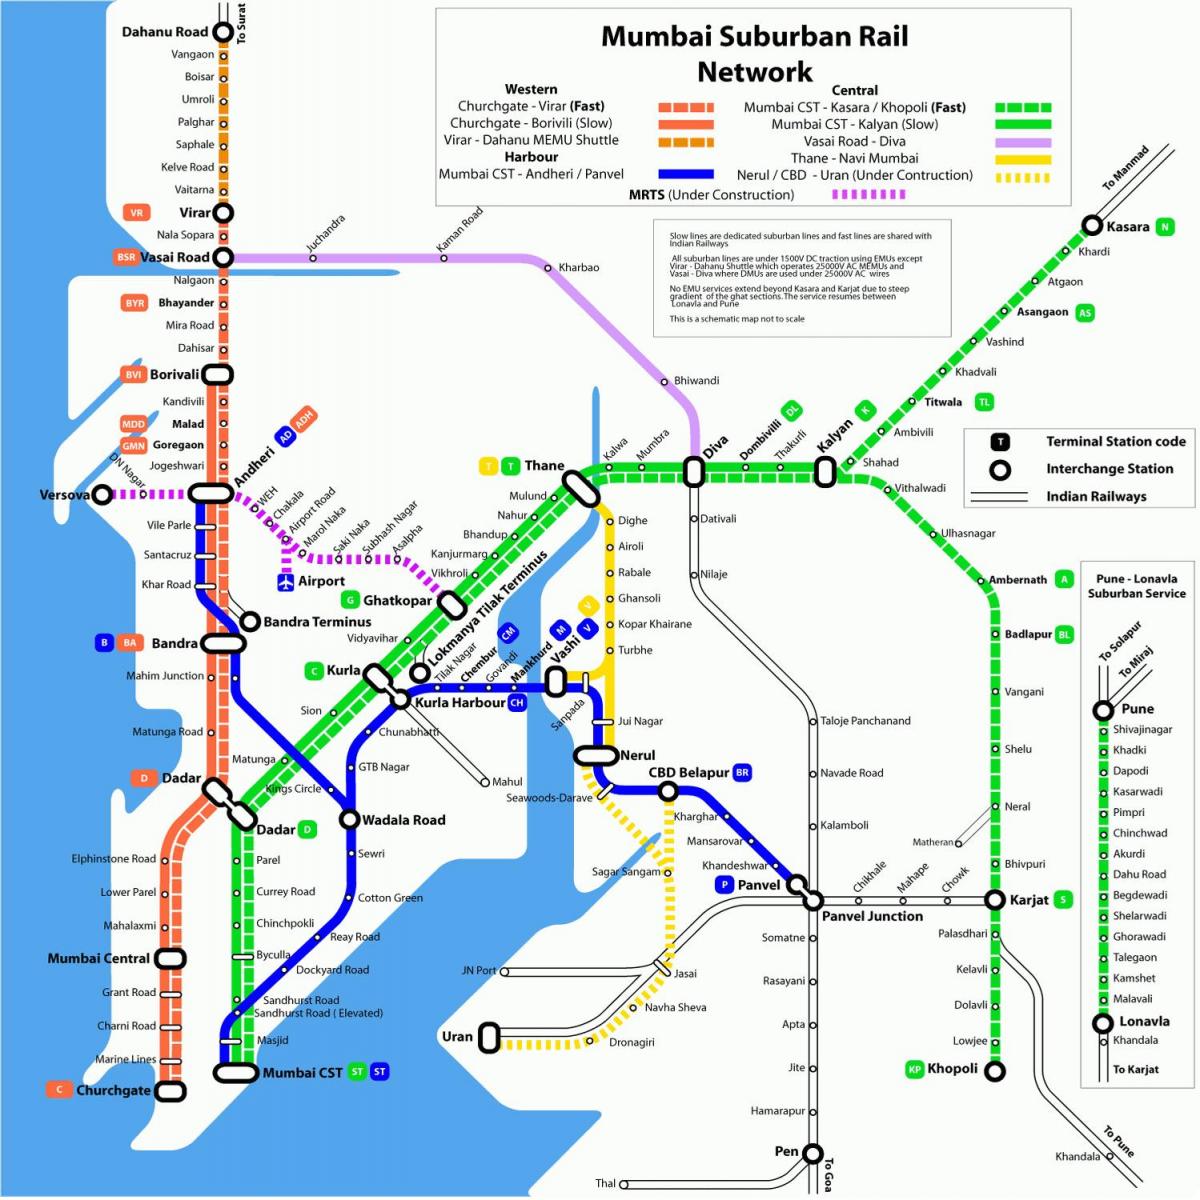 Մետրոյի Մումբայի գնացքով քարտեզի վրա